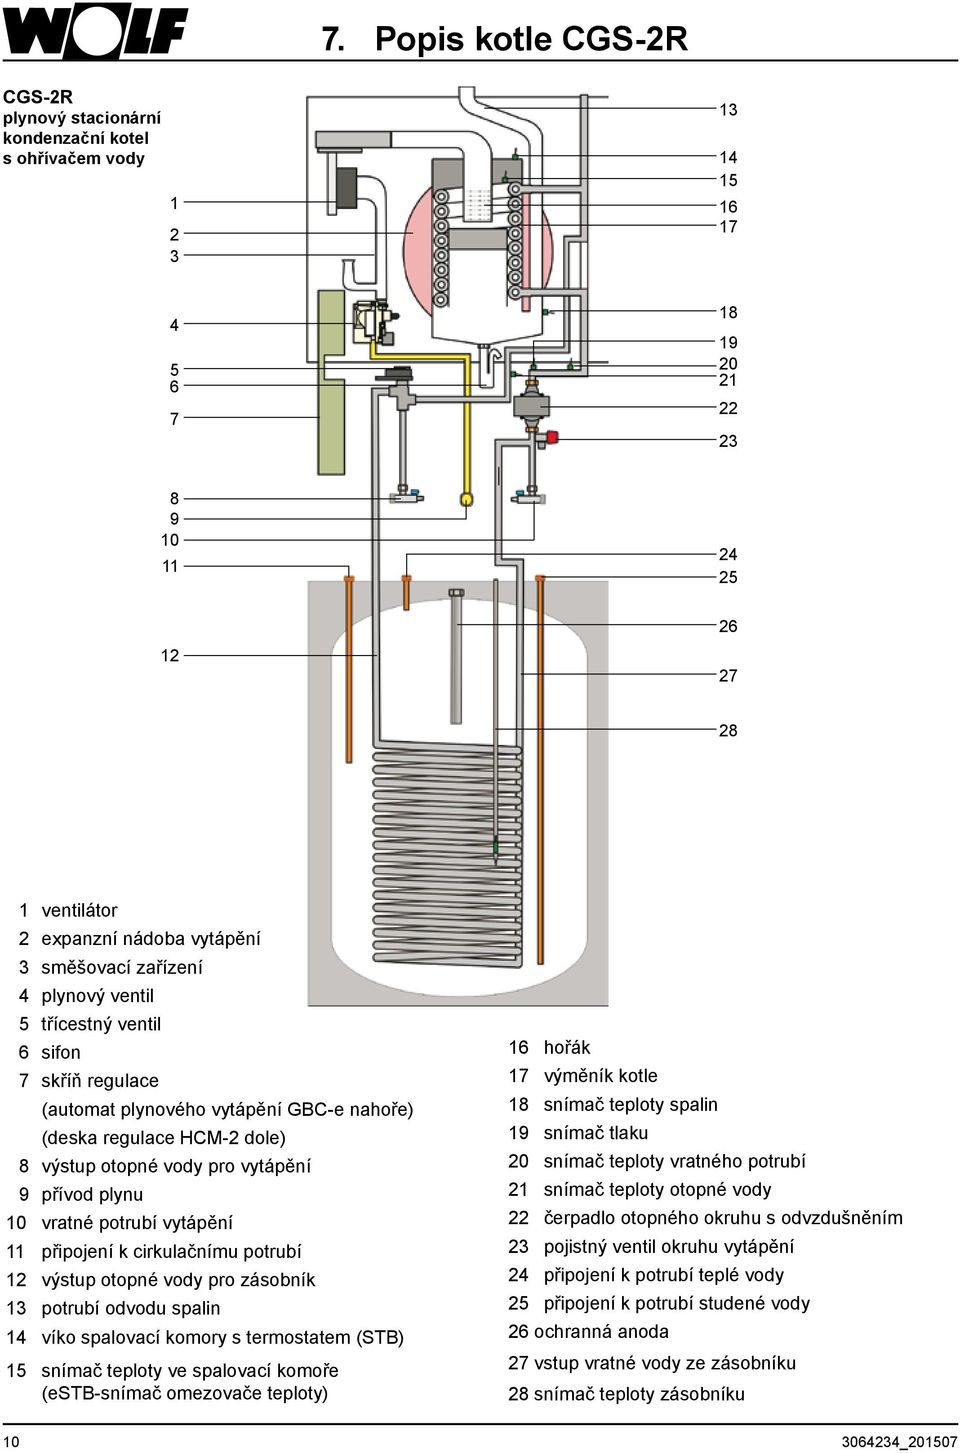 plynu 10 vratné potrubí vytápění 11 připojení k cirkulačnímu potrubí 12 výstup otopné vody pro zásobník 13 potrubí odvodu spalin 14 víko spalovací komory s termostatem (STB) 15 snímač teploty ve